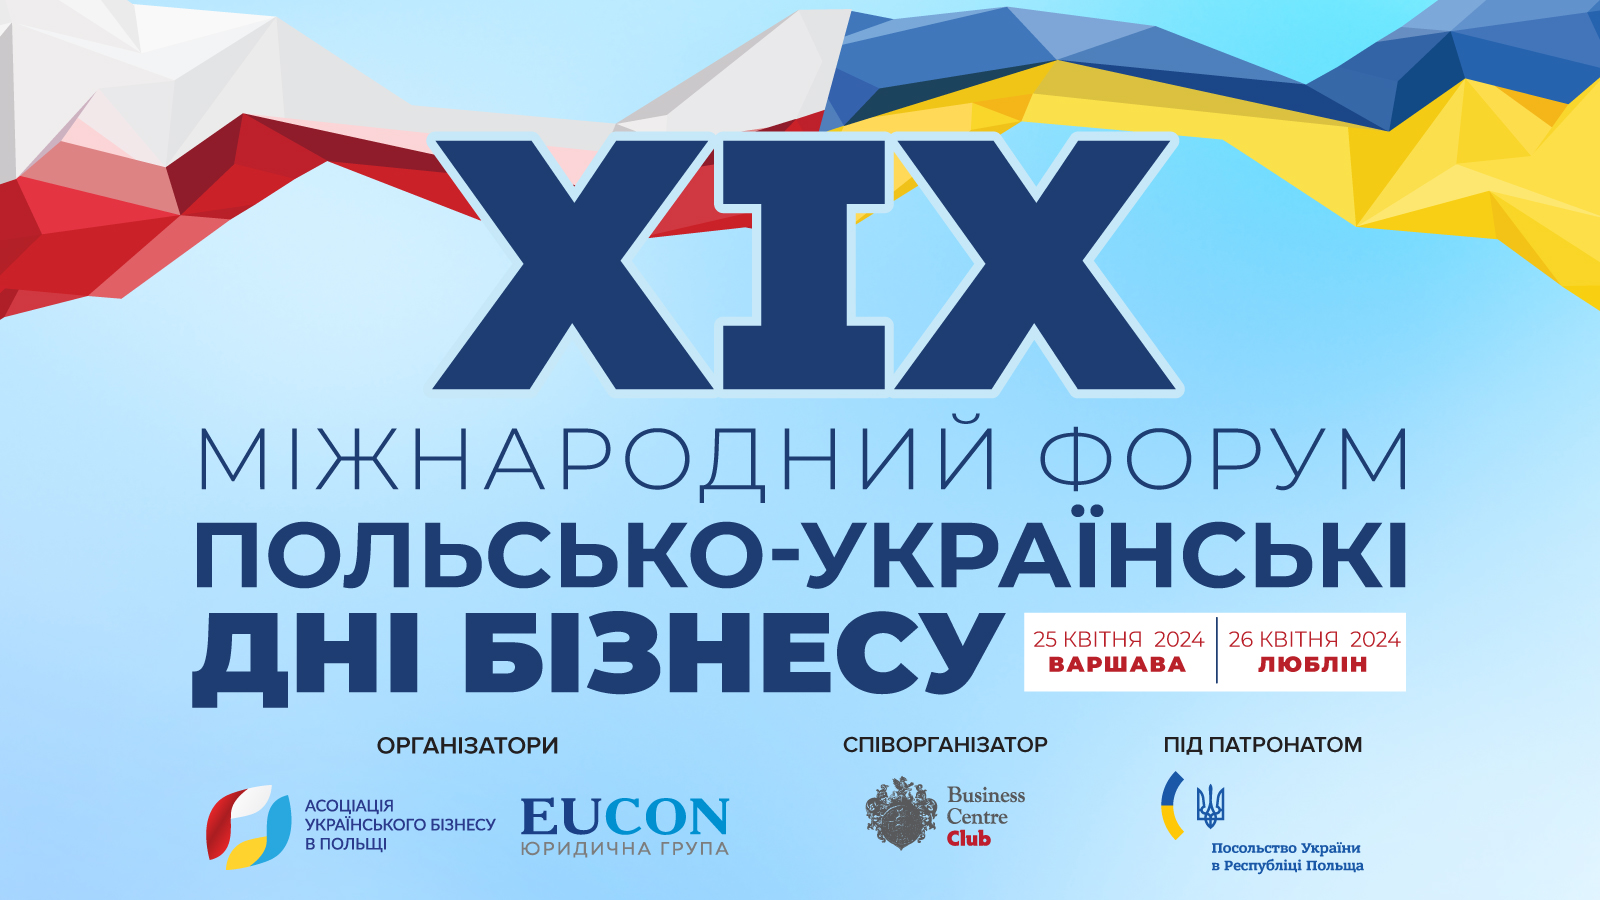 XIX Международный форум «Польско-украинские дни бизнеса»